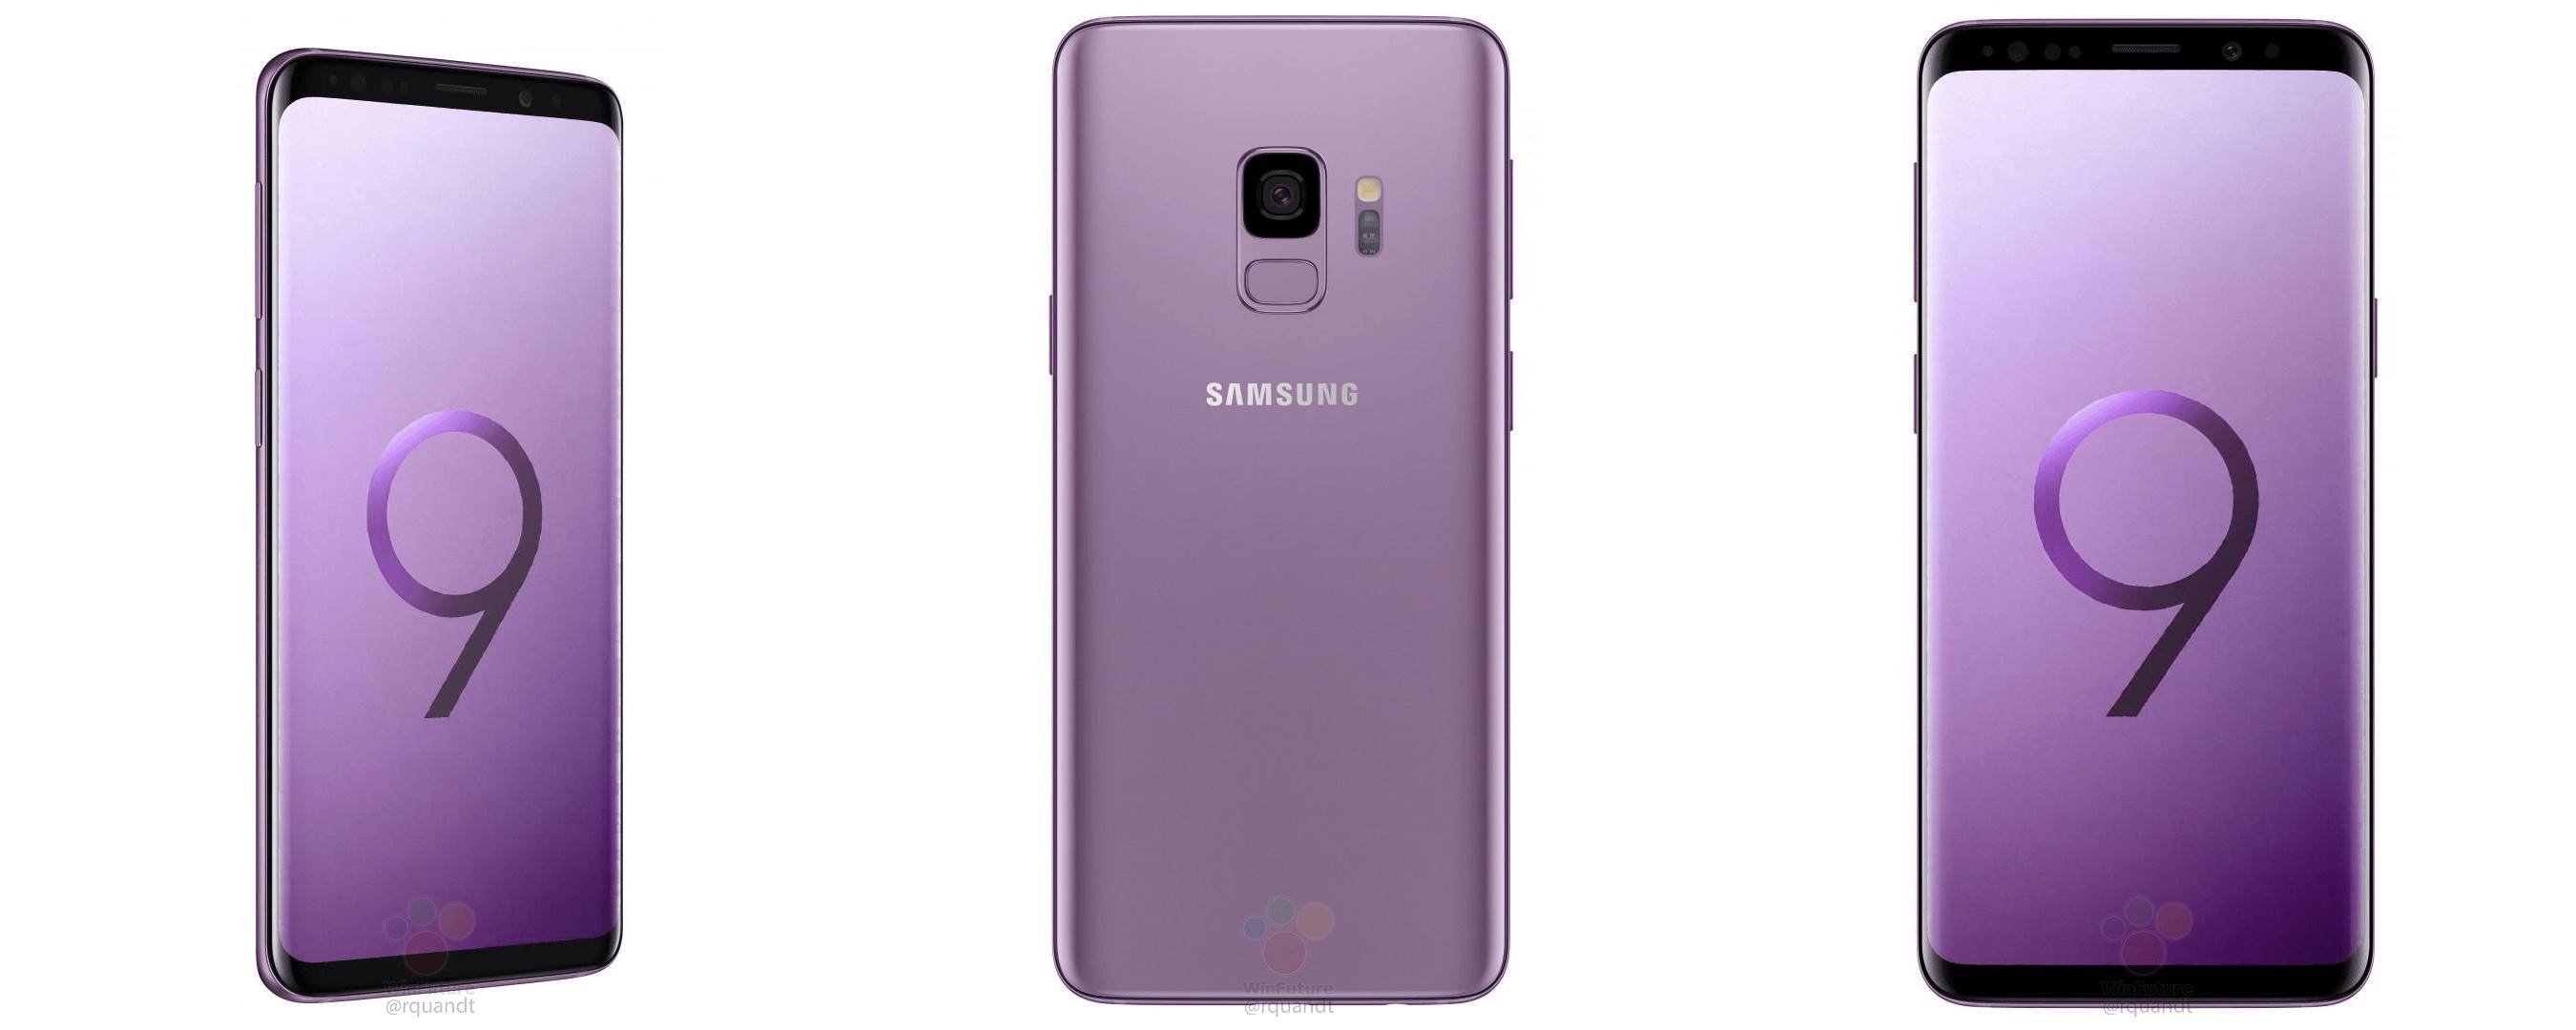 Fioletowe zdjęcia prasowe Samsunga Galaxy S9